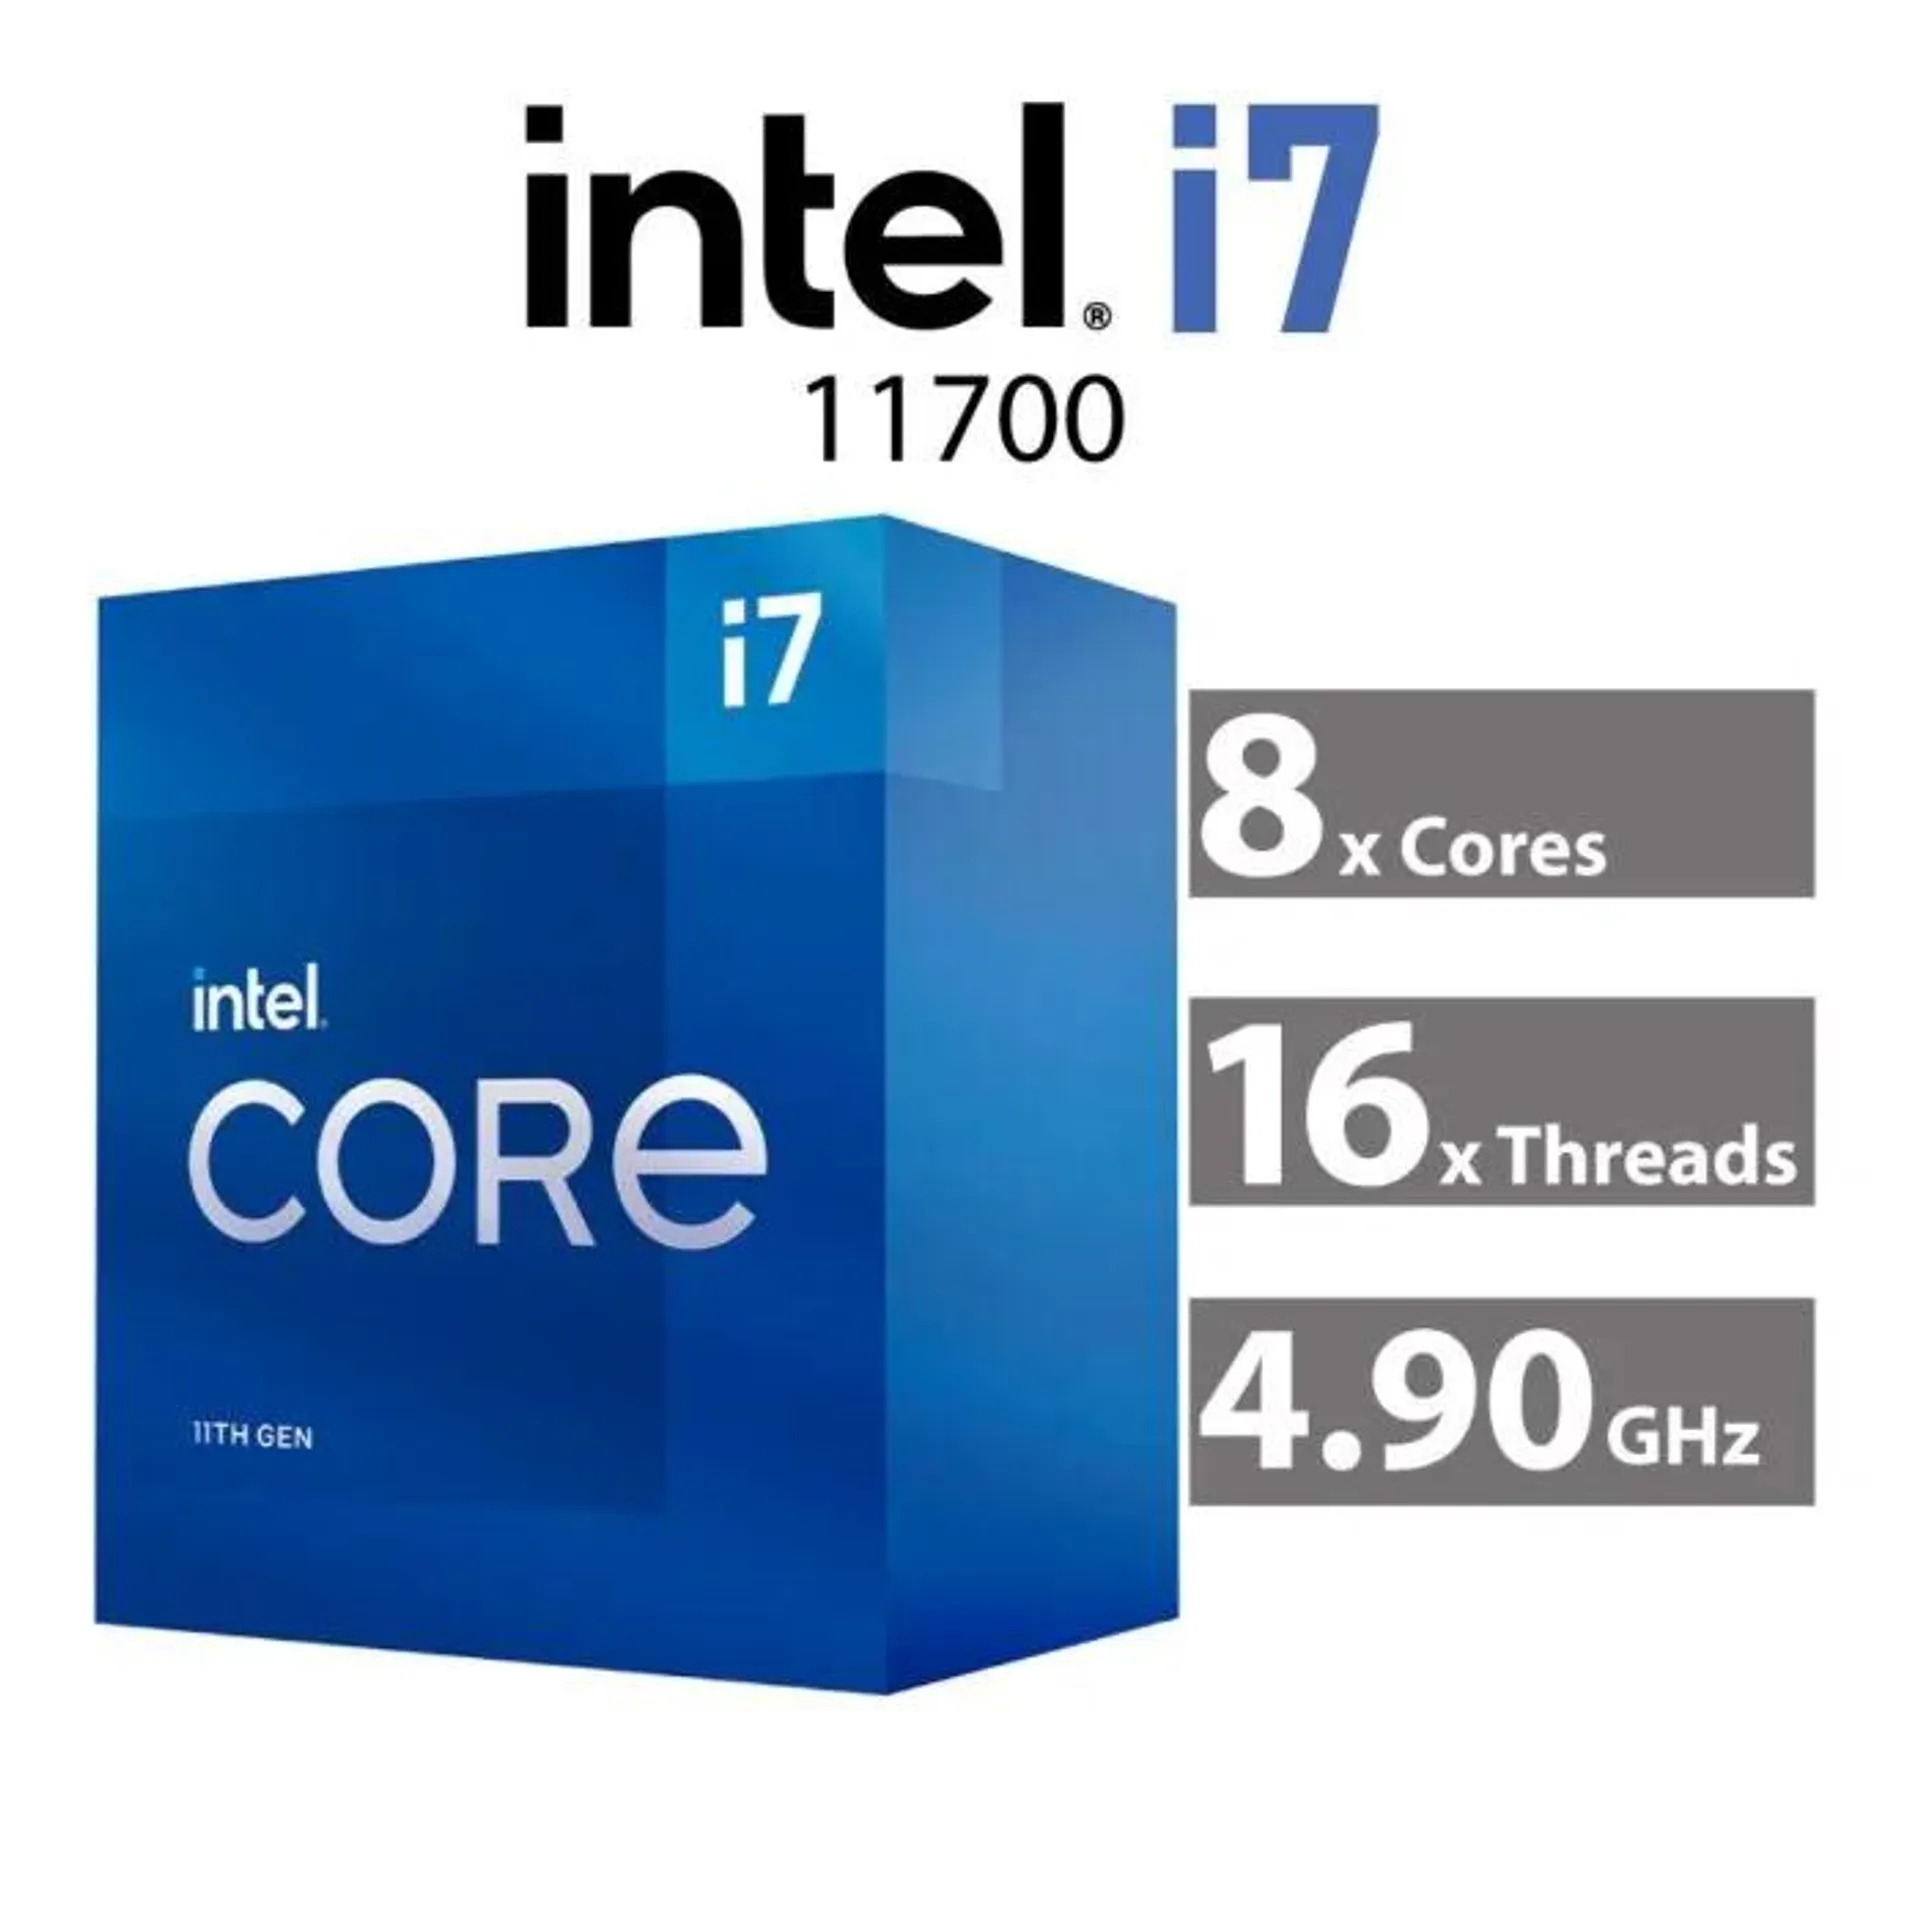 Intel Core i7-11700 Rocket Lake 8-Core 2.50GHz LGA1200 65W CM8070804491214 Desktop Processor